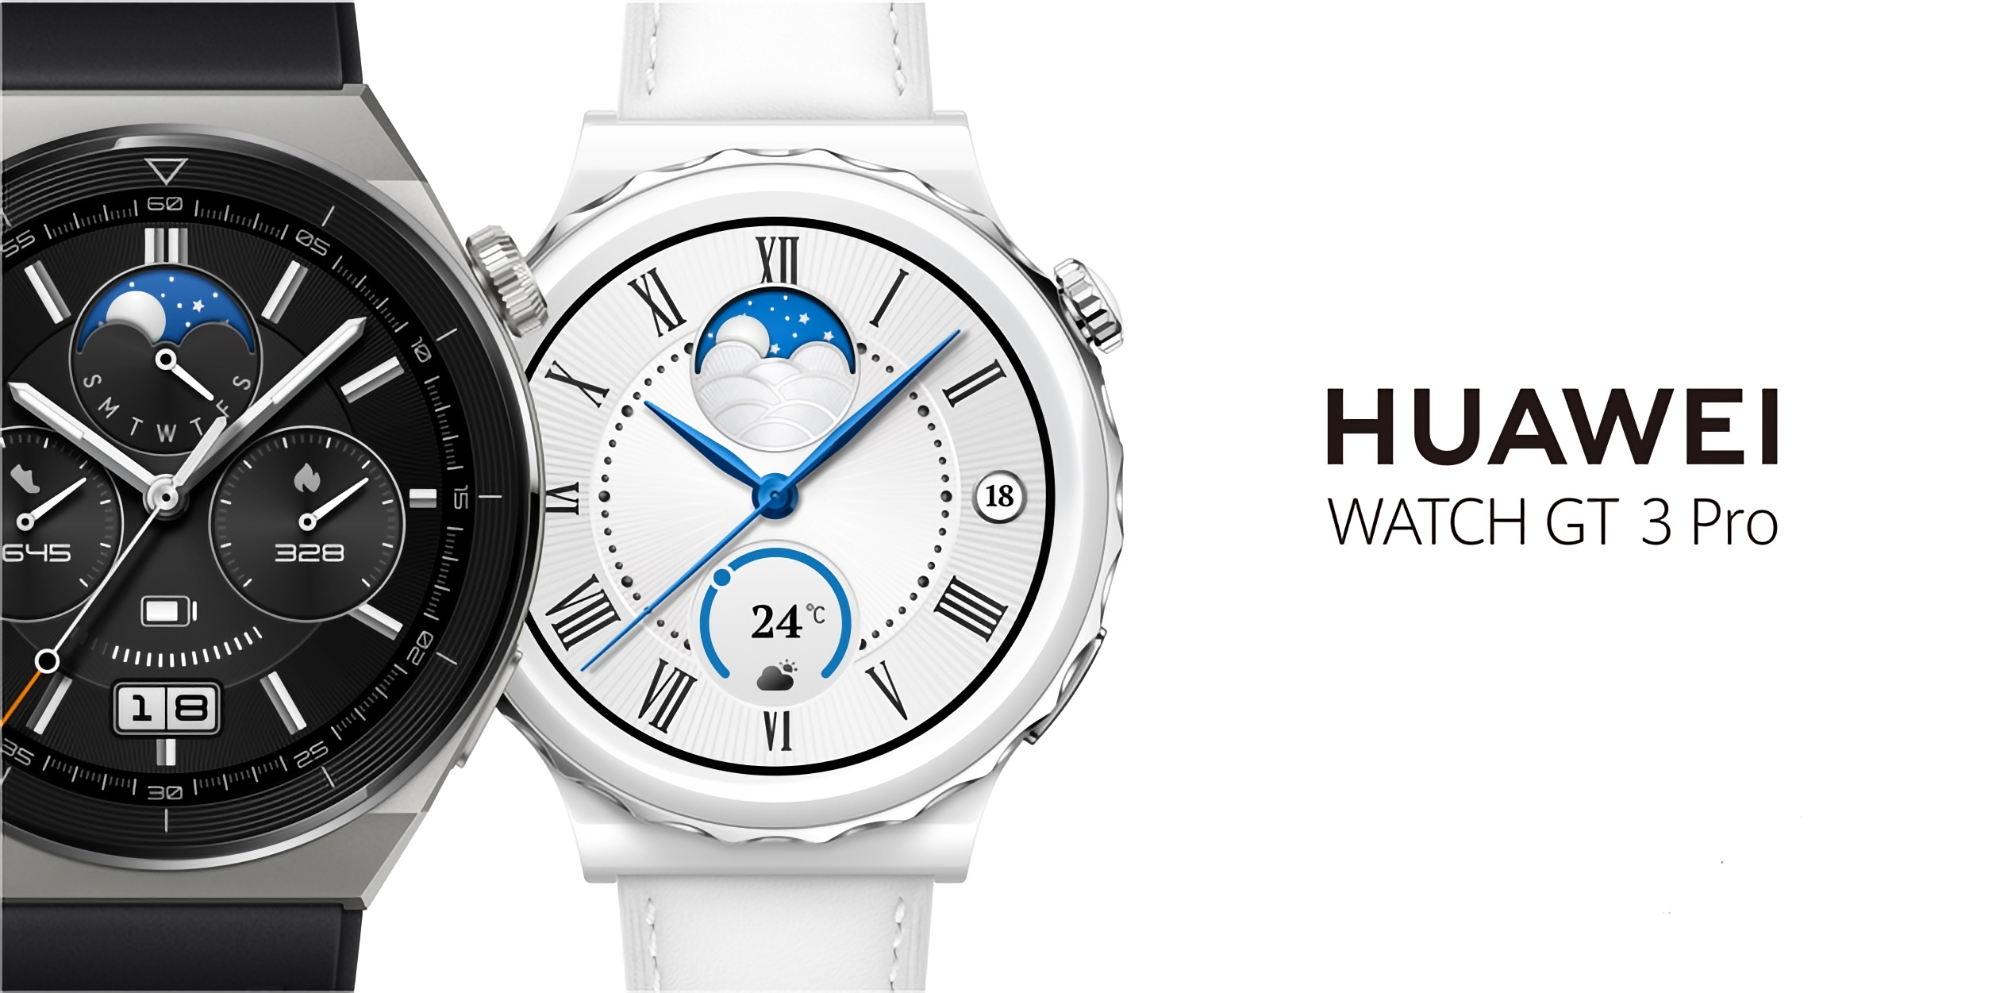 La Huawei Watch GT 3 Pro peut désormais afficher les performances d'endurance et de course à pied 